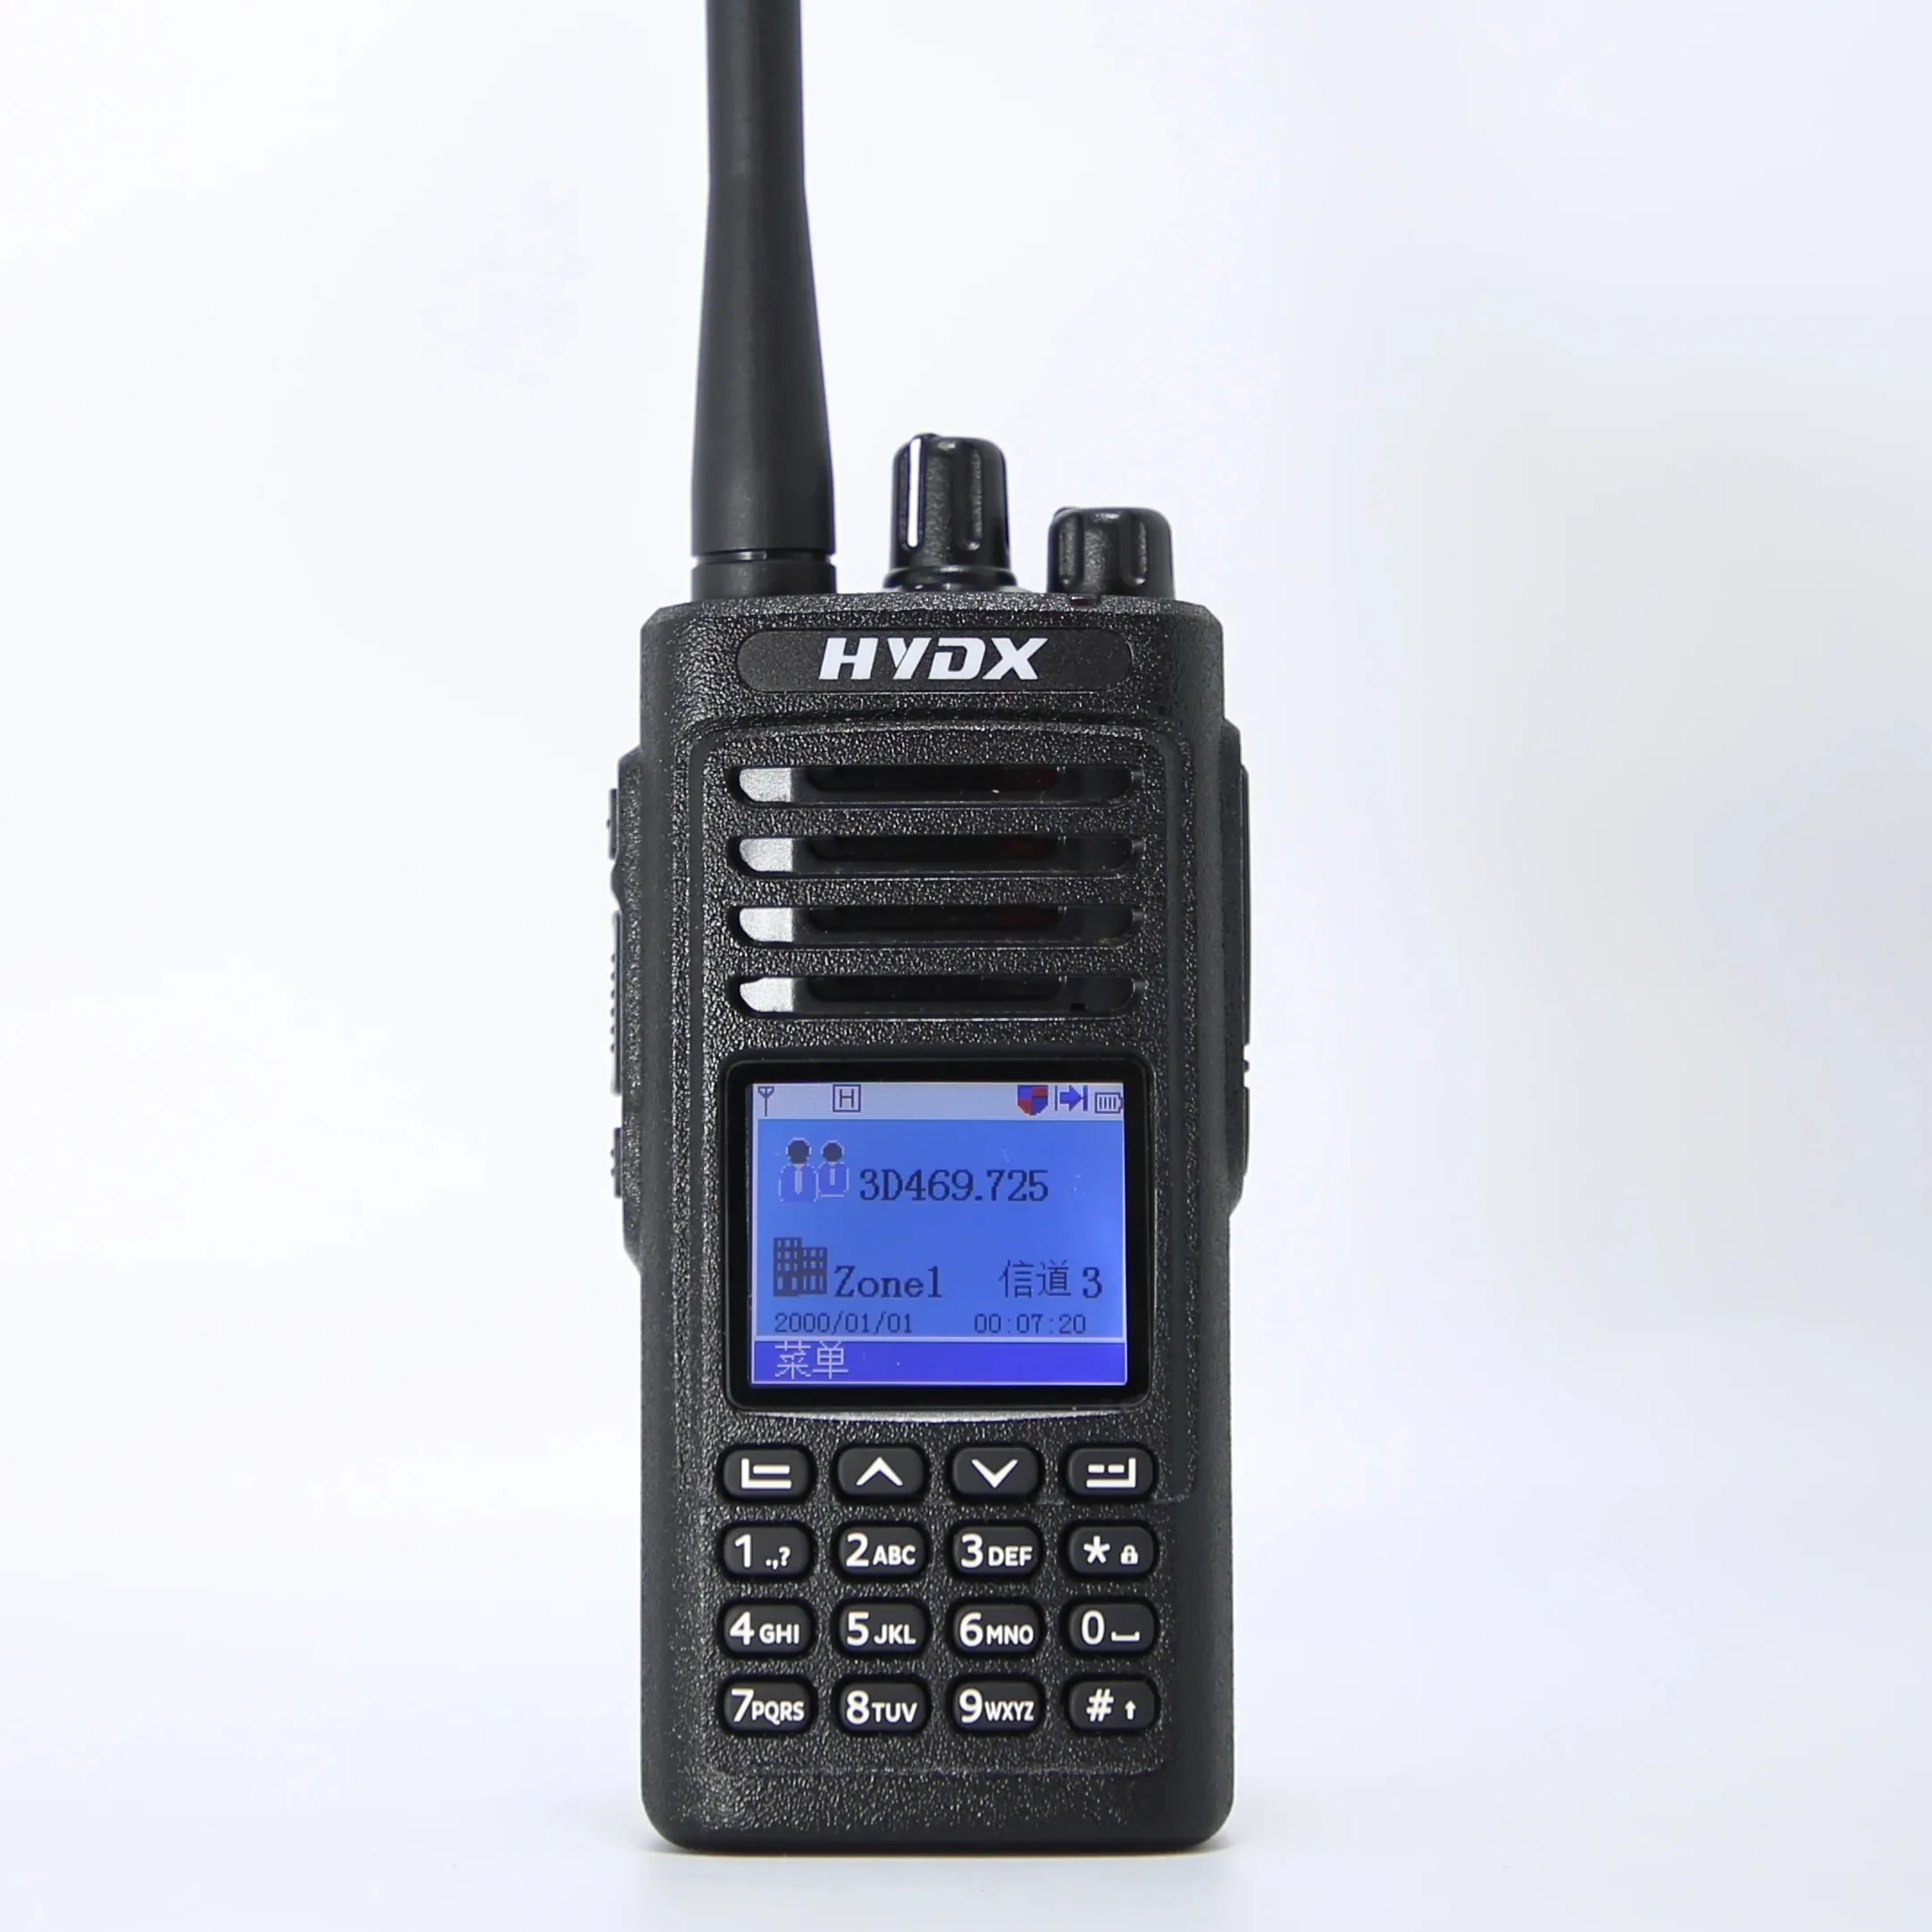 HYDX-D50 программируемый радиоприемопередатчик, коммерческая цифровая двухсторонняя радиостанция, совместимая с MOTOTRBO Talkie Walkie